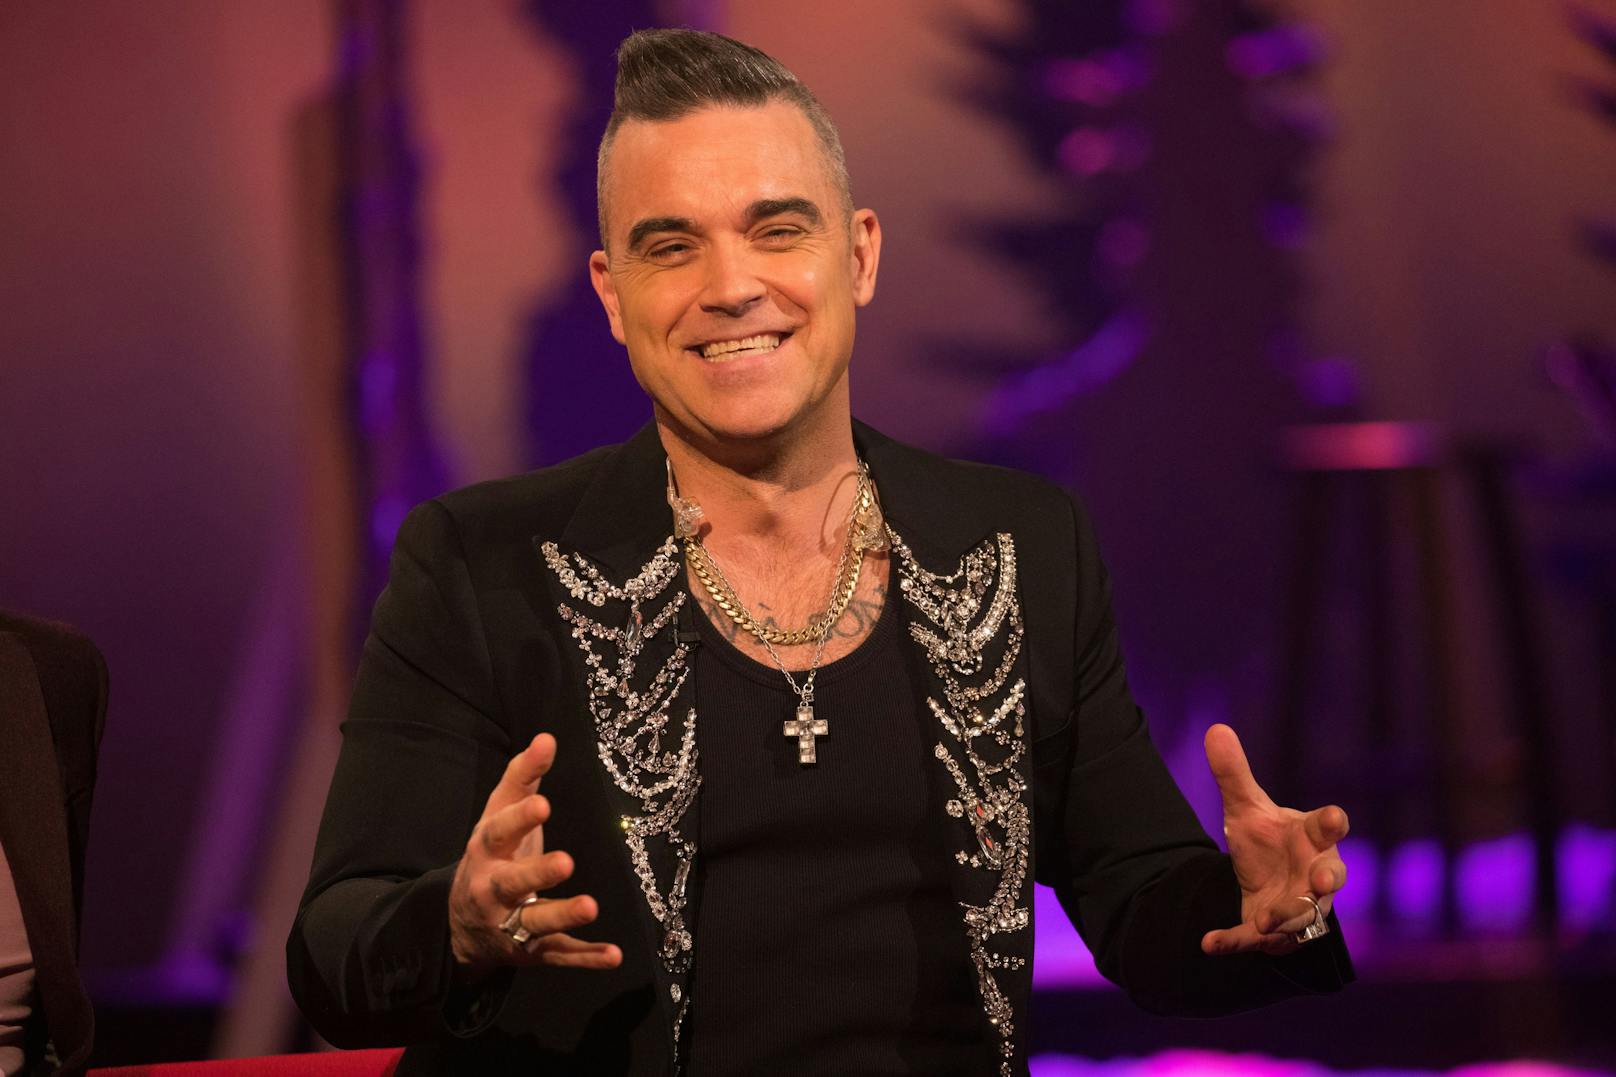 Popstar Robbie Williams